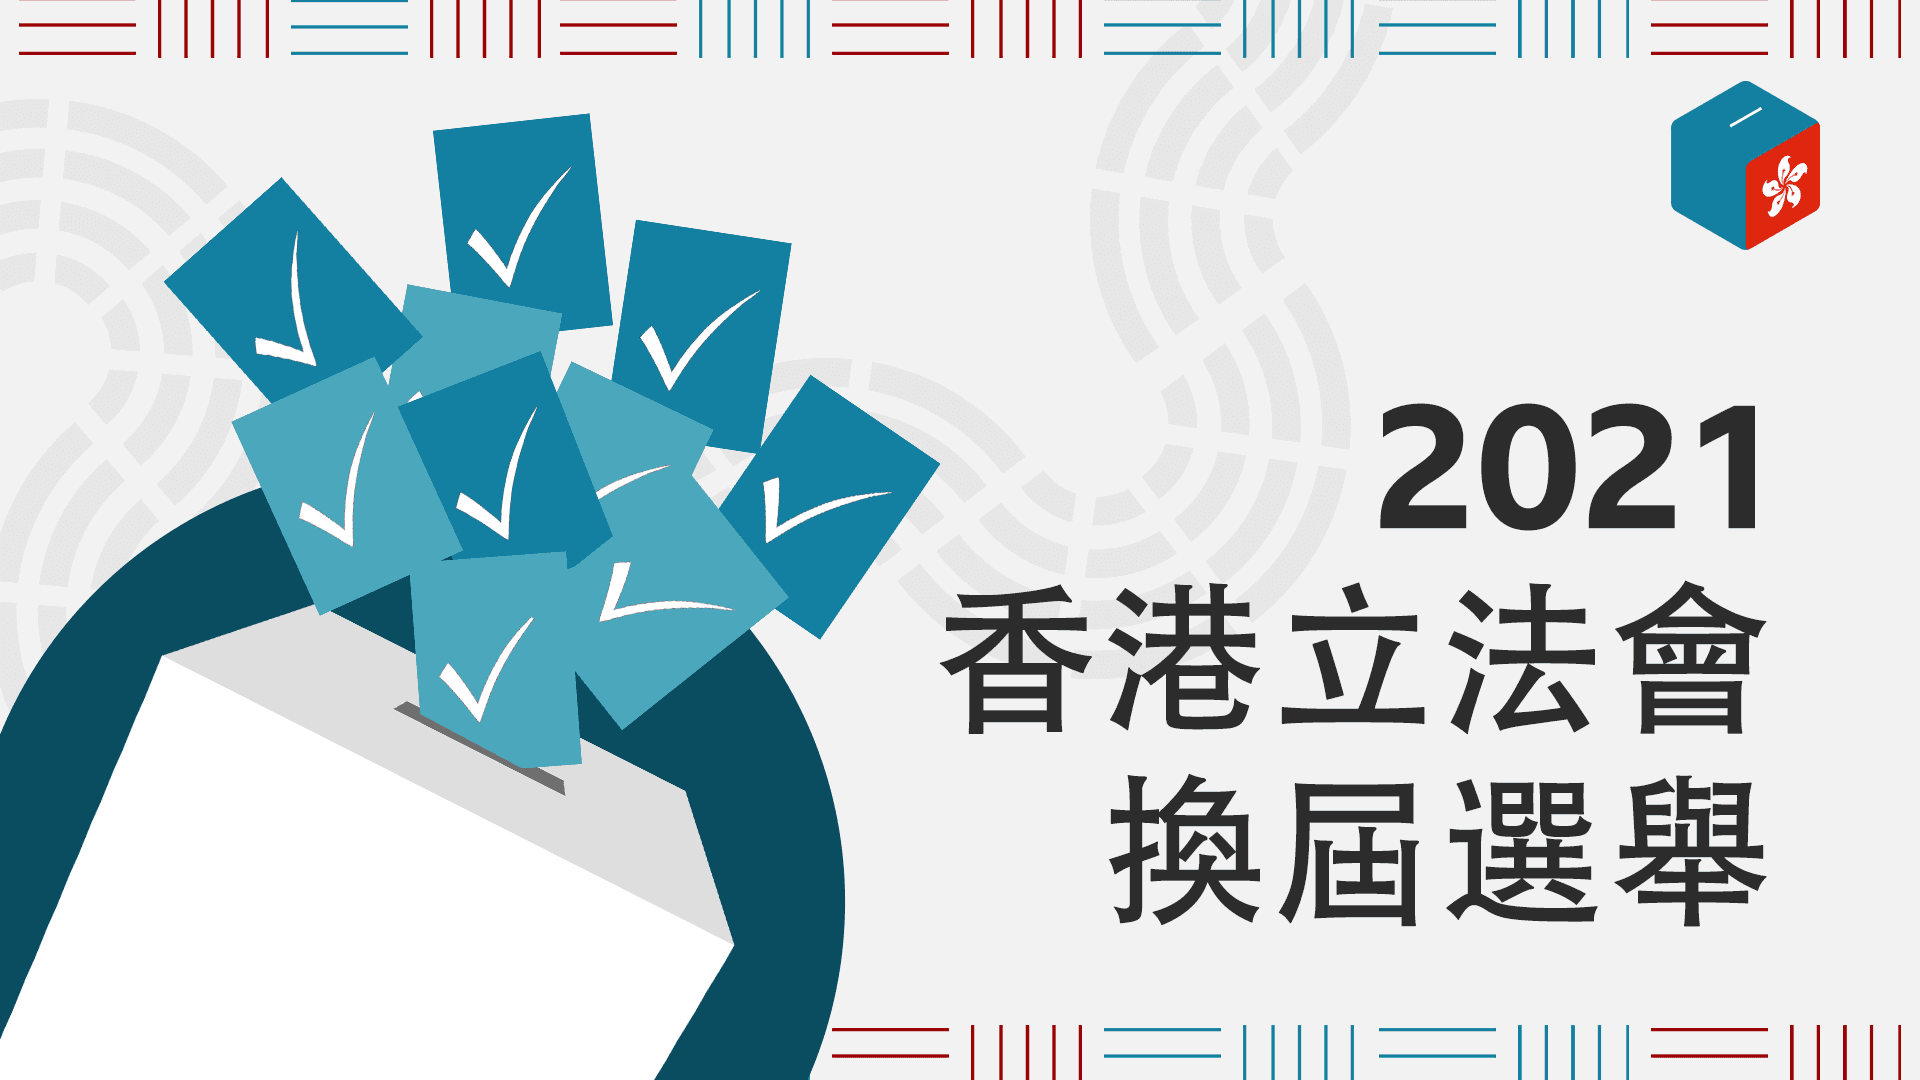 香港立法会选举专题报道 c News 中文